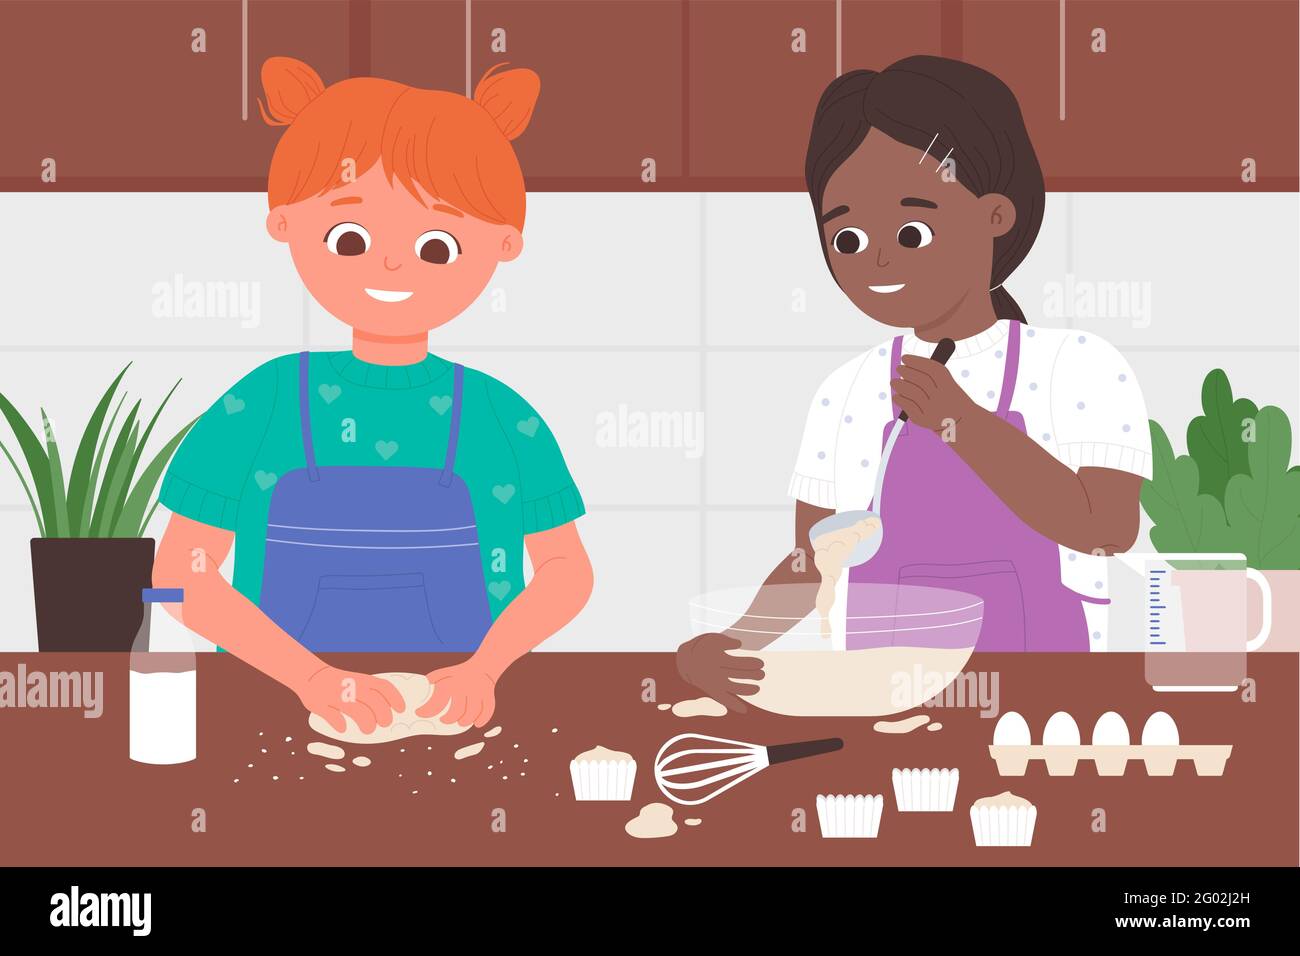 Kind Chef Bäcker Beruf, Kinder kochen zusammen in der Küche Vektor-Illustration. Cartoon glücklich niedlichen Mädchen Kind Zeichen in Schürzen backen köstliche Cupcakes Dessert, stehen am Tisch Hintergrund Stock Vektor